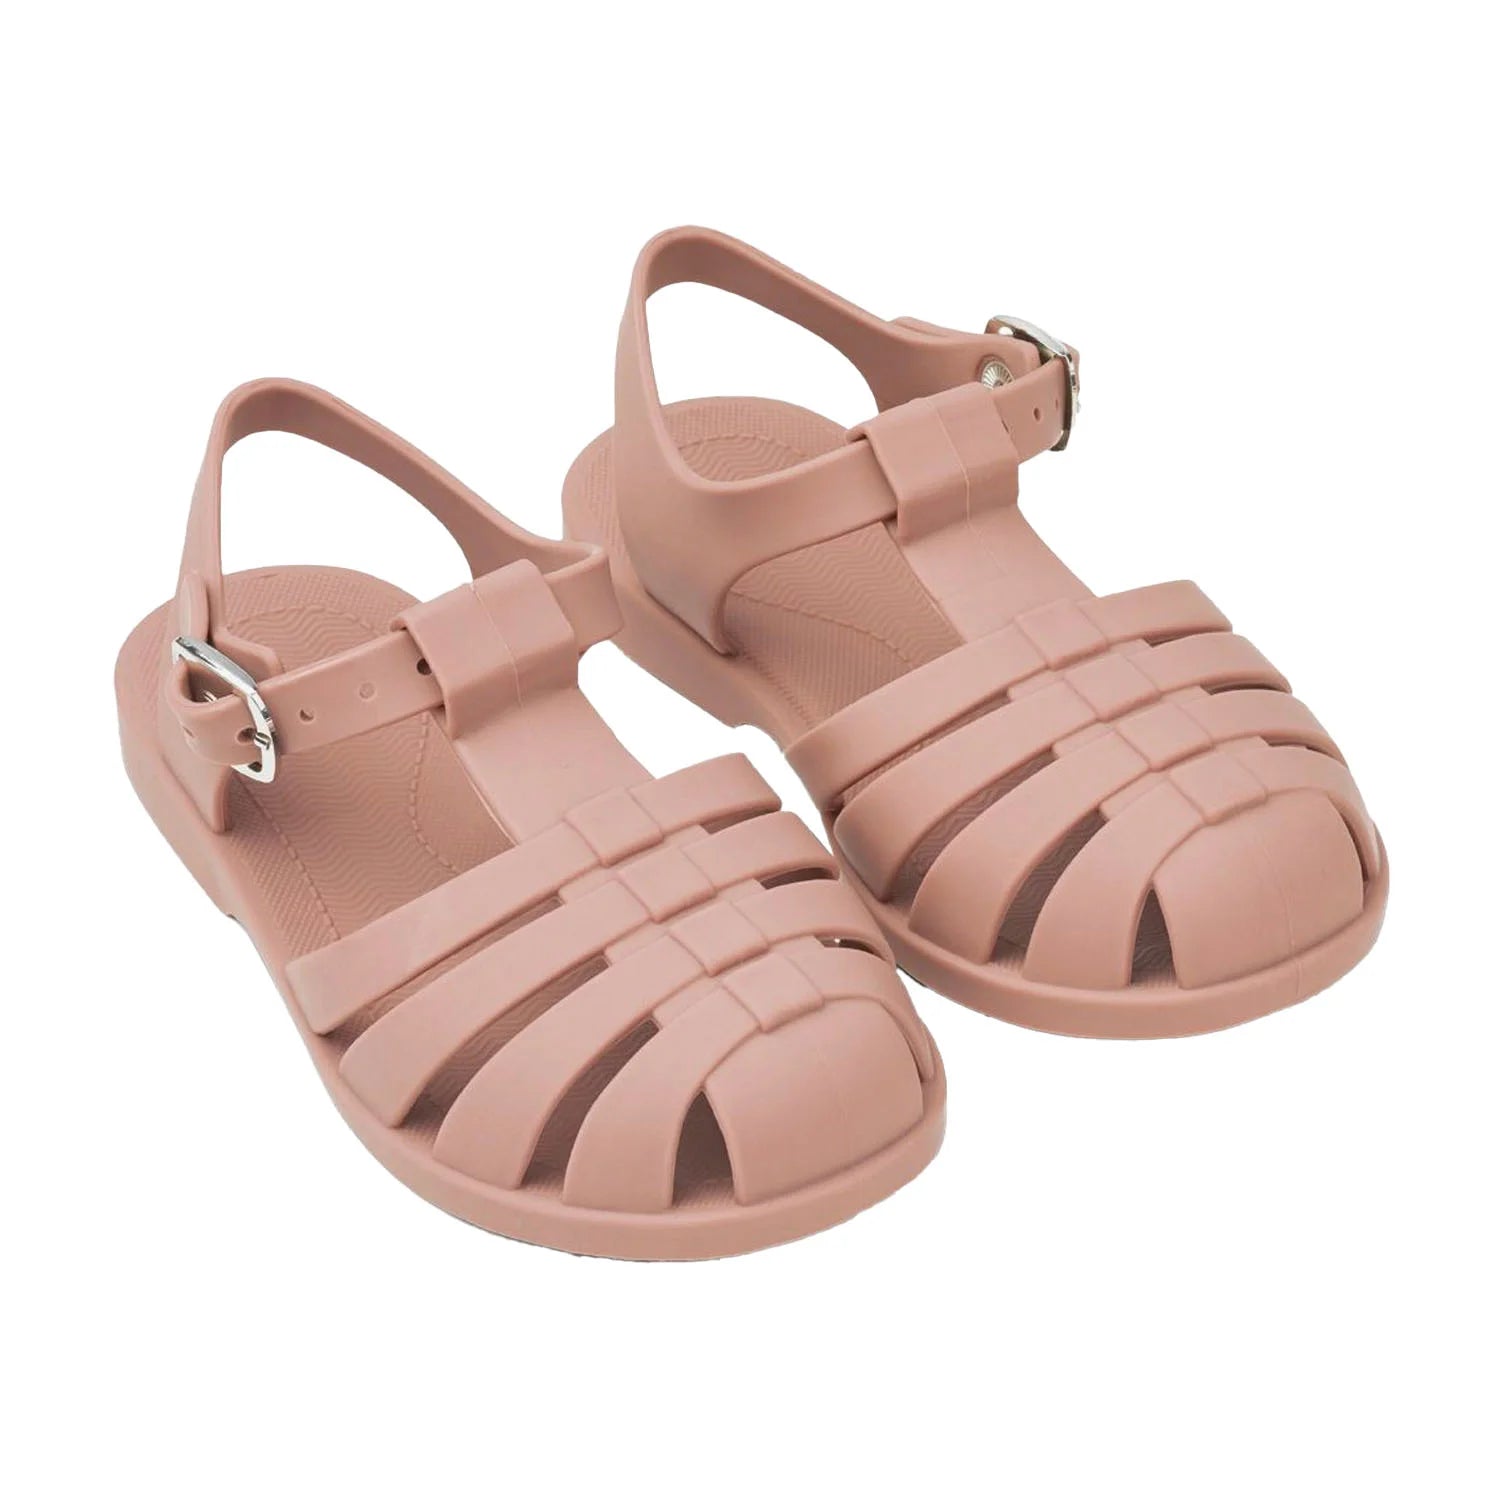 An image of Buy Liewood Bre Beach Sandals - Summer Kids Sandals Dark Rose / 23